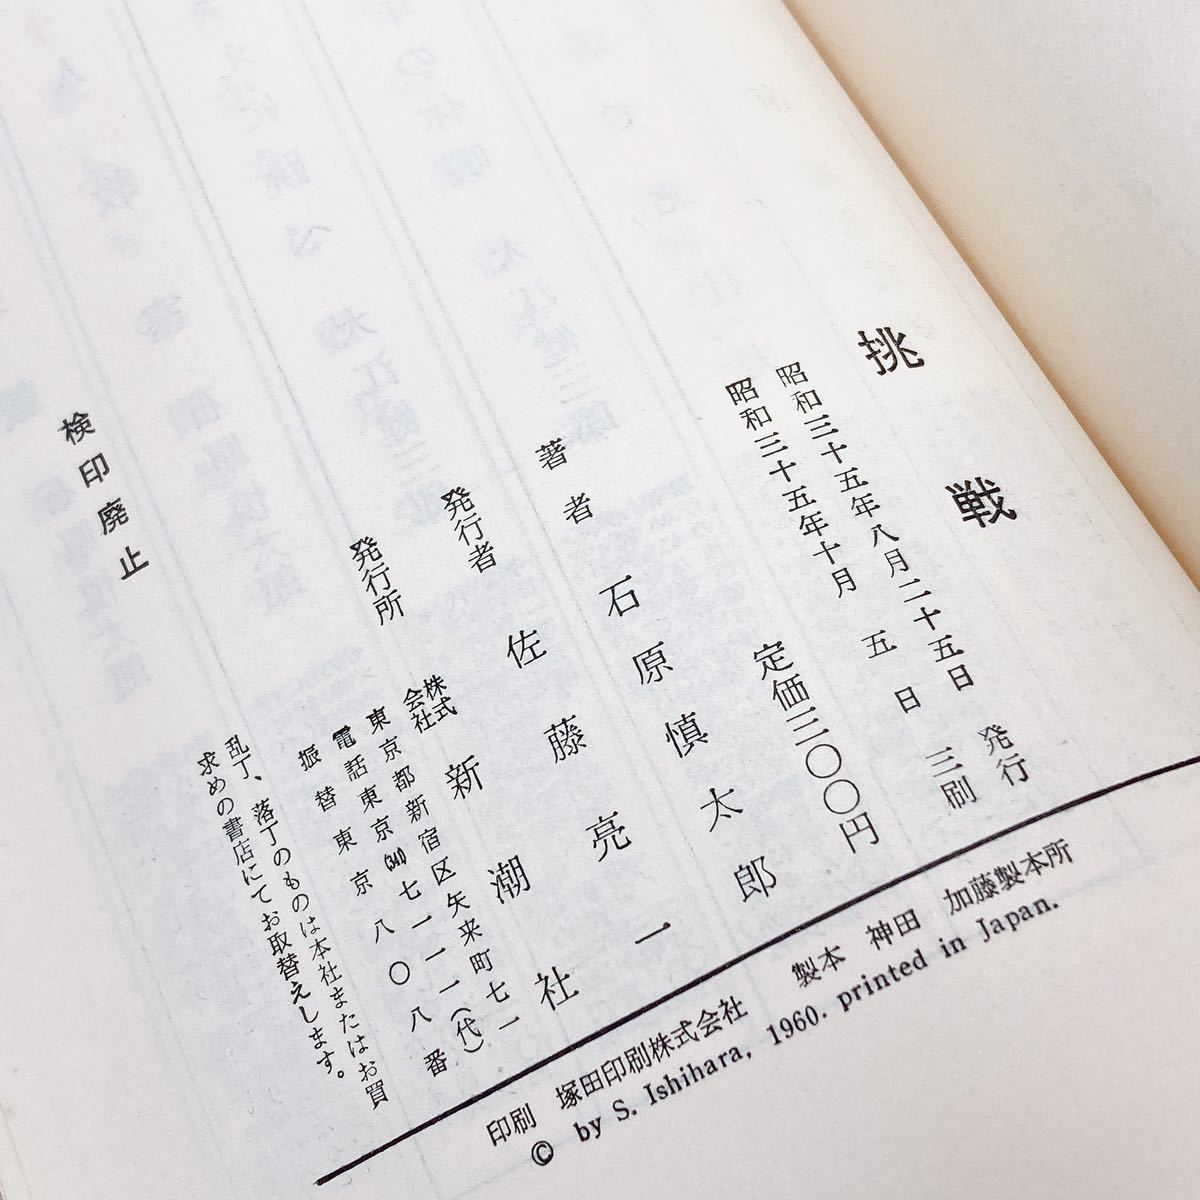 [ стоимость доставки 230 иен / быстрое решение немедленно покупка возможно ] пробовать Ishihara Shintaro выпускать фирма Shinchosha 1960 Showa 35 год . line третий . длина сборник повесть 4 шесть штамп 311.30503-2....- литература 